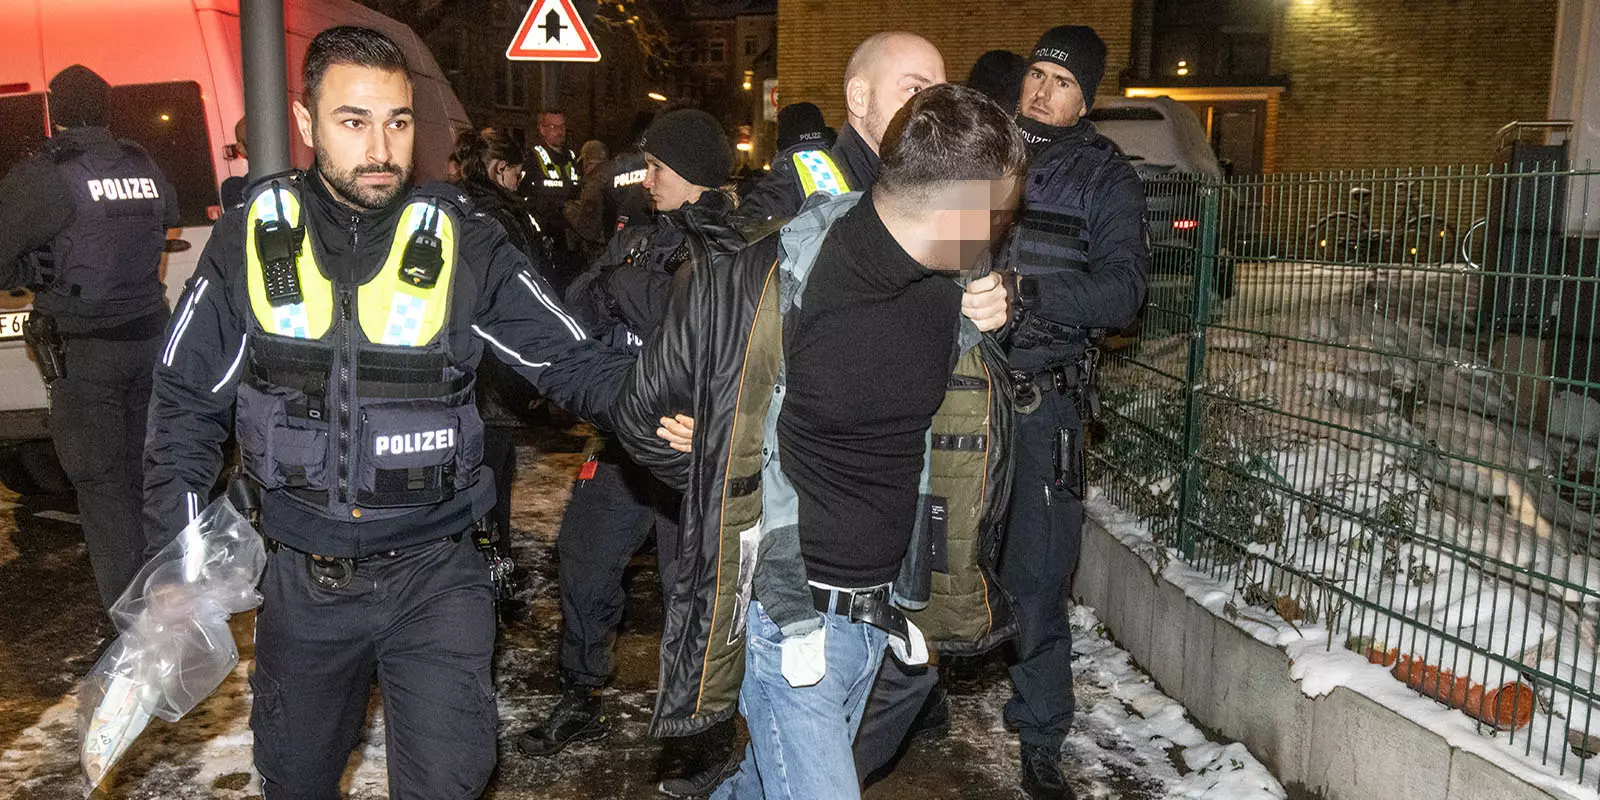 Polizisten führen einen der Festgenommenen ab. Foto: zv